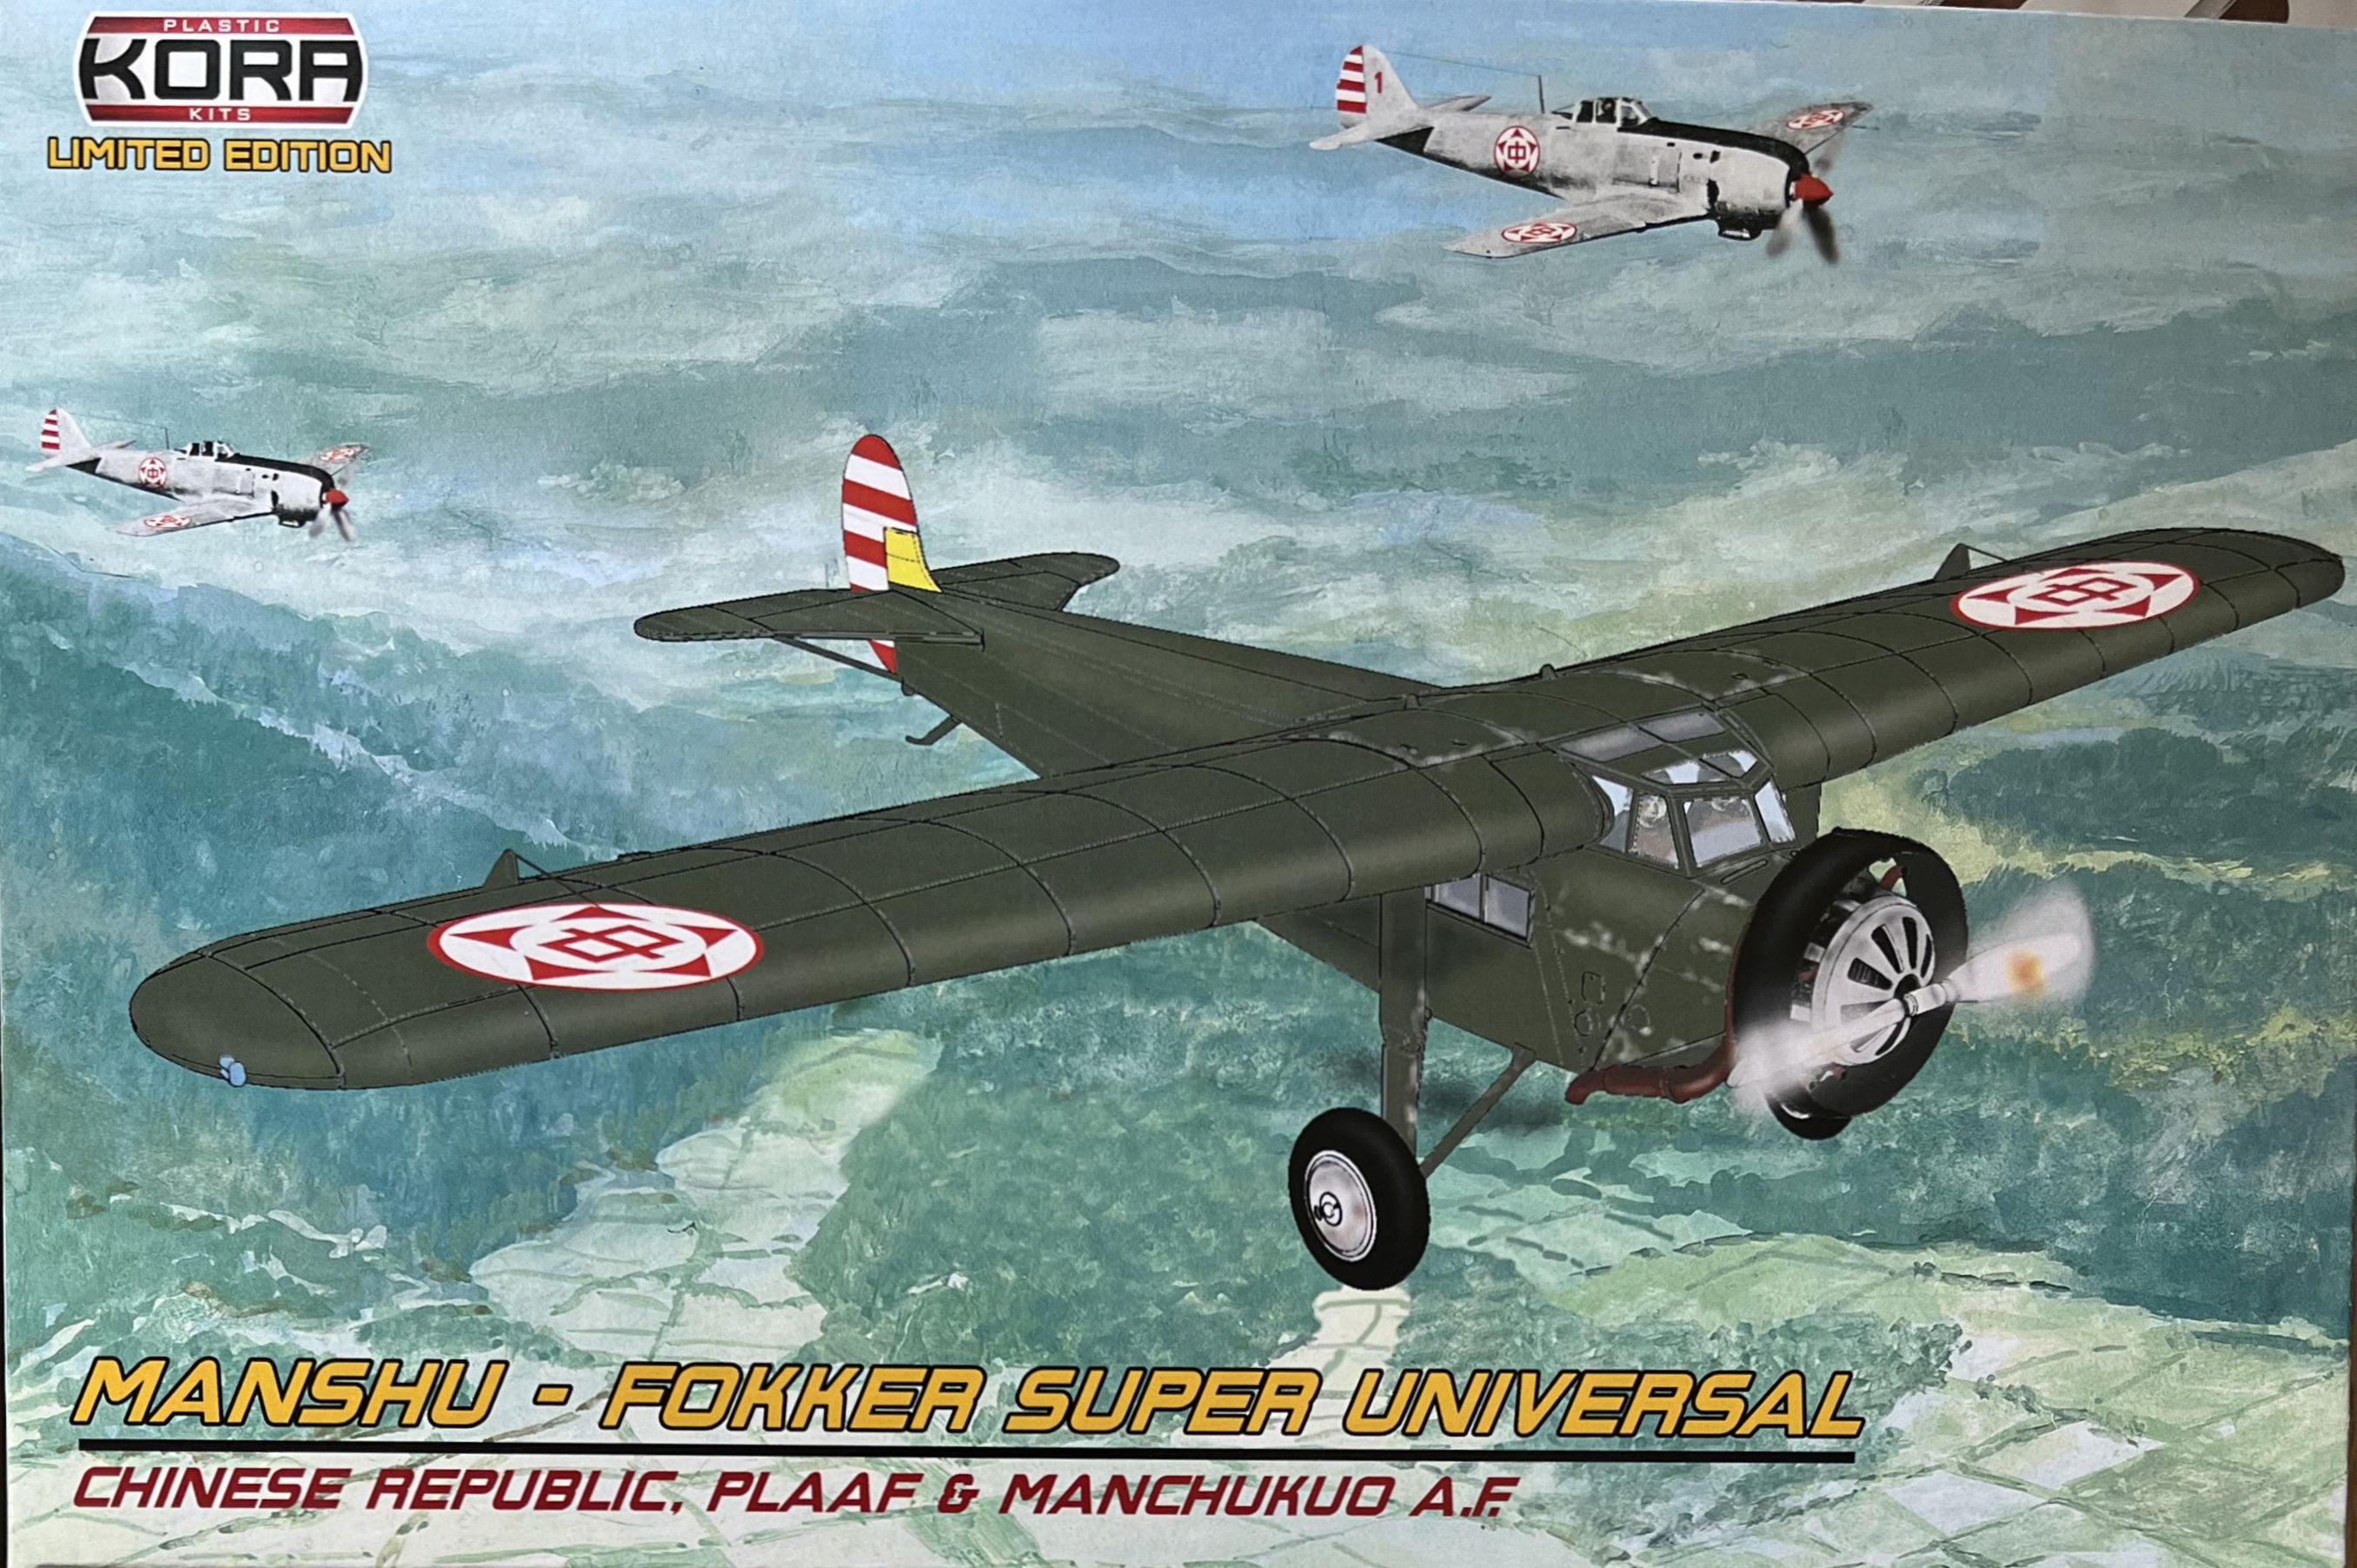 Manshu-Fokker Super Universal (Chinese Rep., PLAAF, Manchukuo)